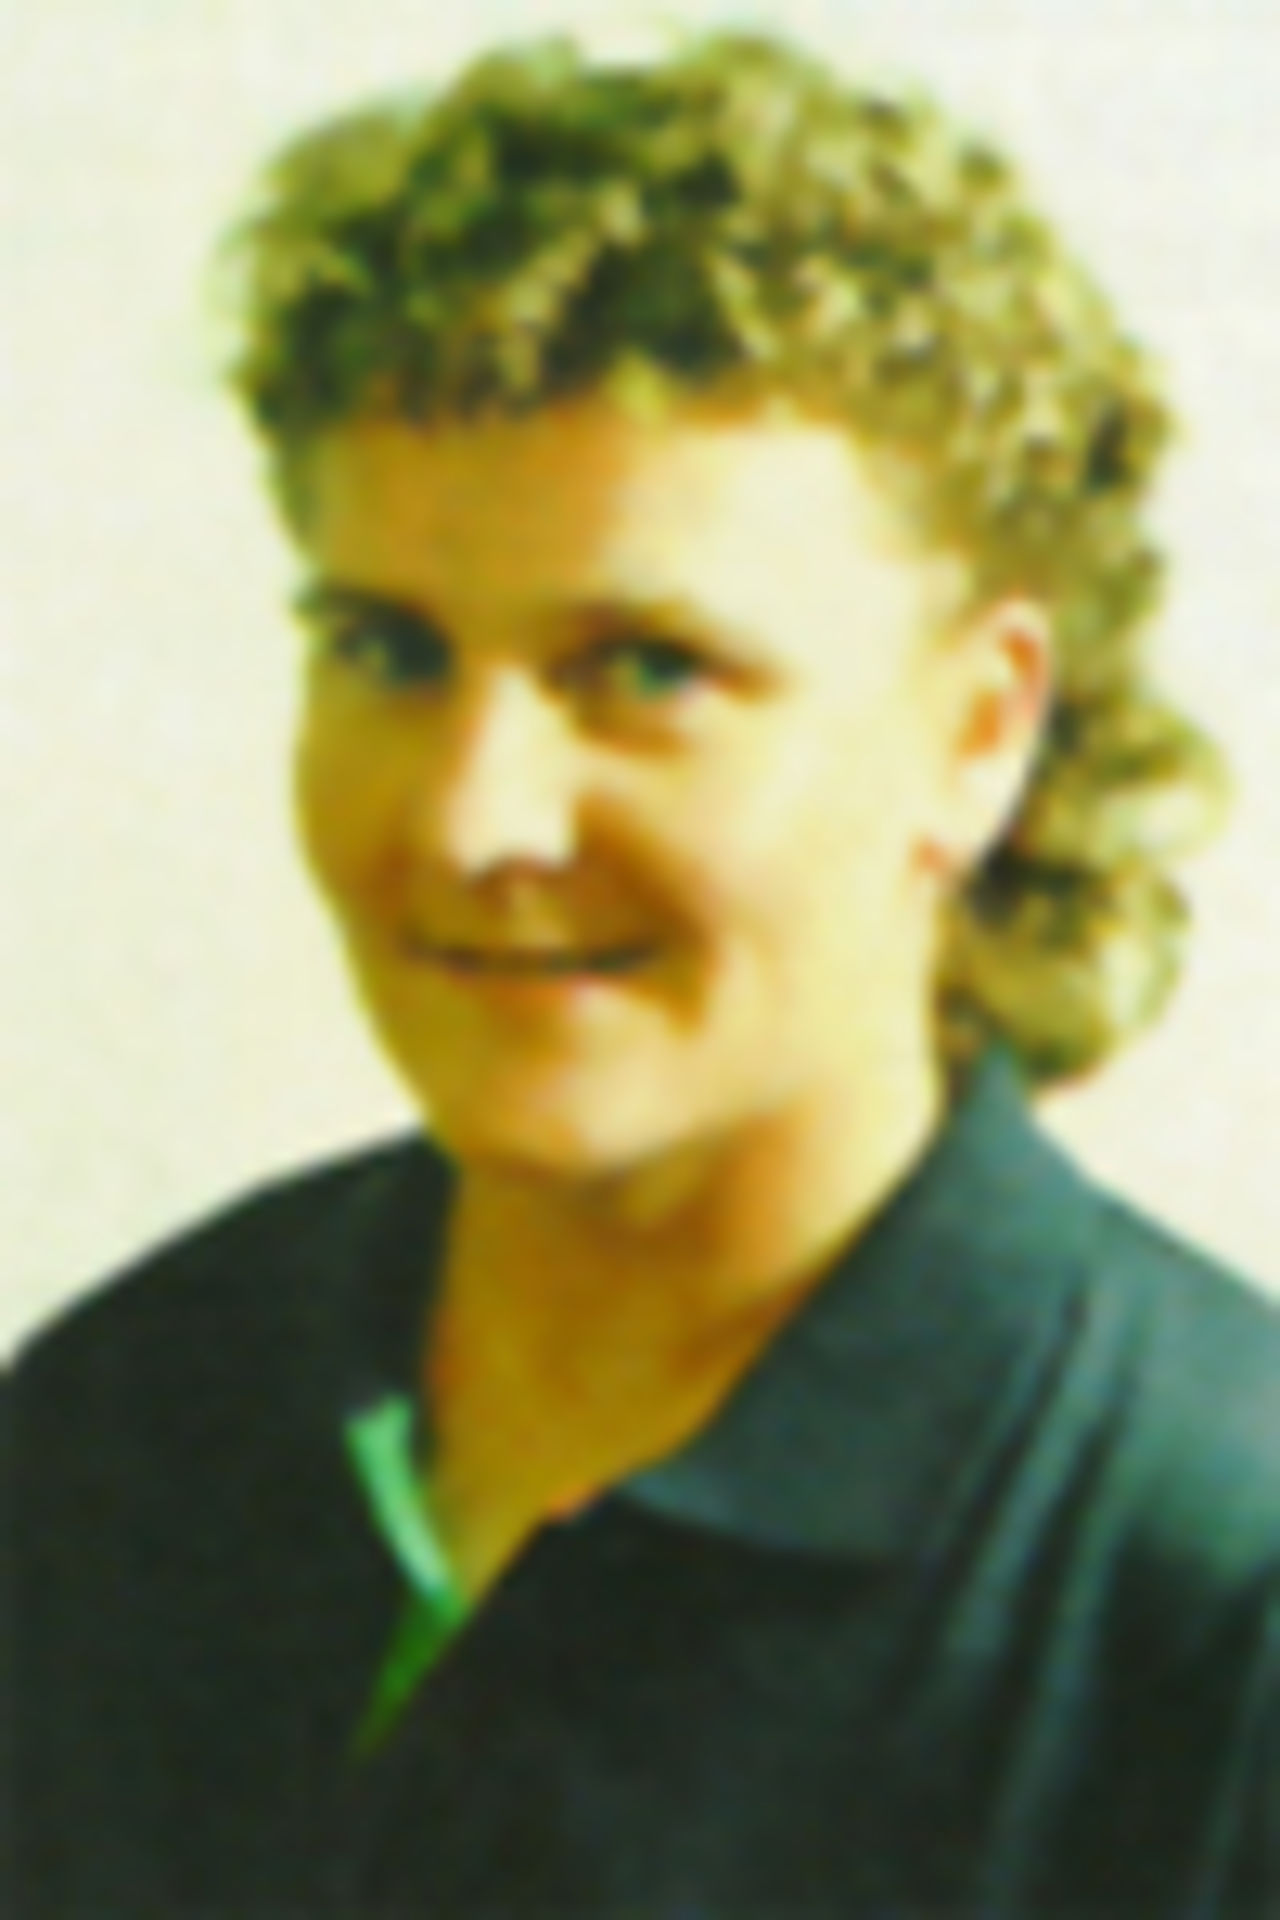 Portrait of Karen Le Comber, New Zealand women's player in the 1997/98 season.